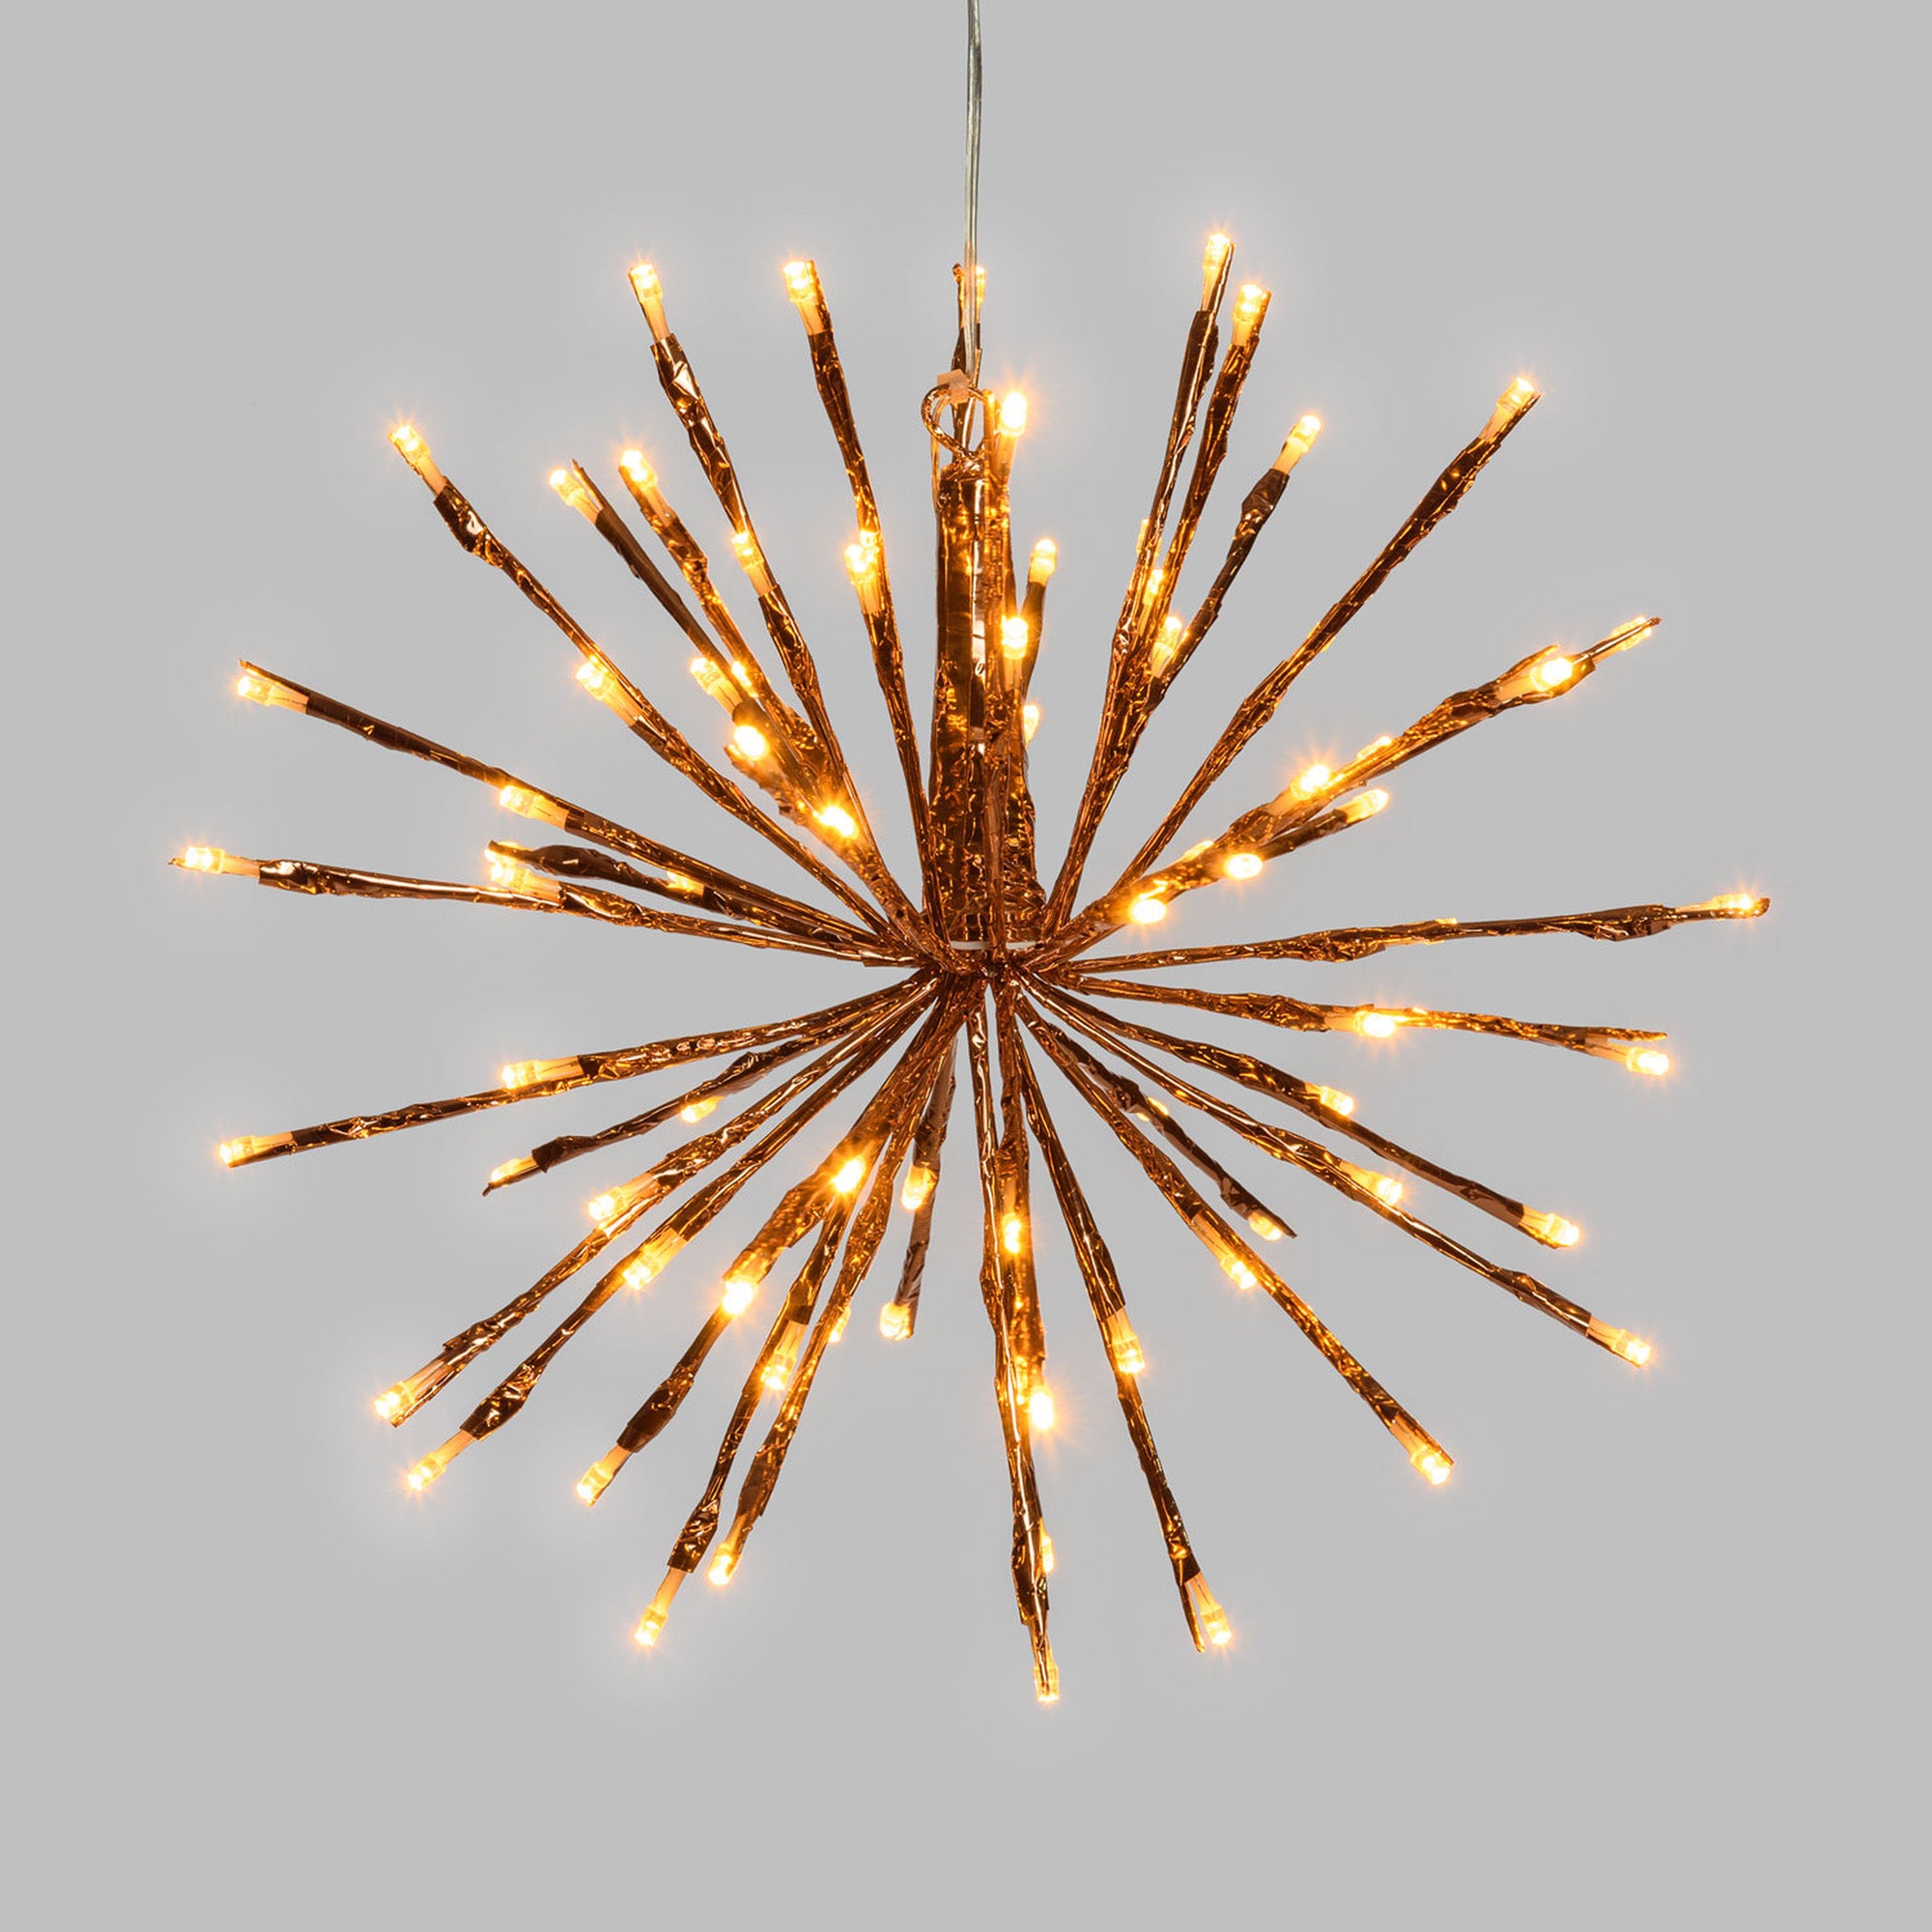 LED Lichterbaum, mit flexiblen Ästen, warmweiß beleuchtet (500 LED - 220 cm)